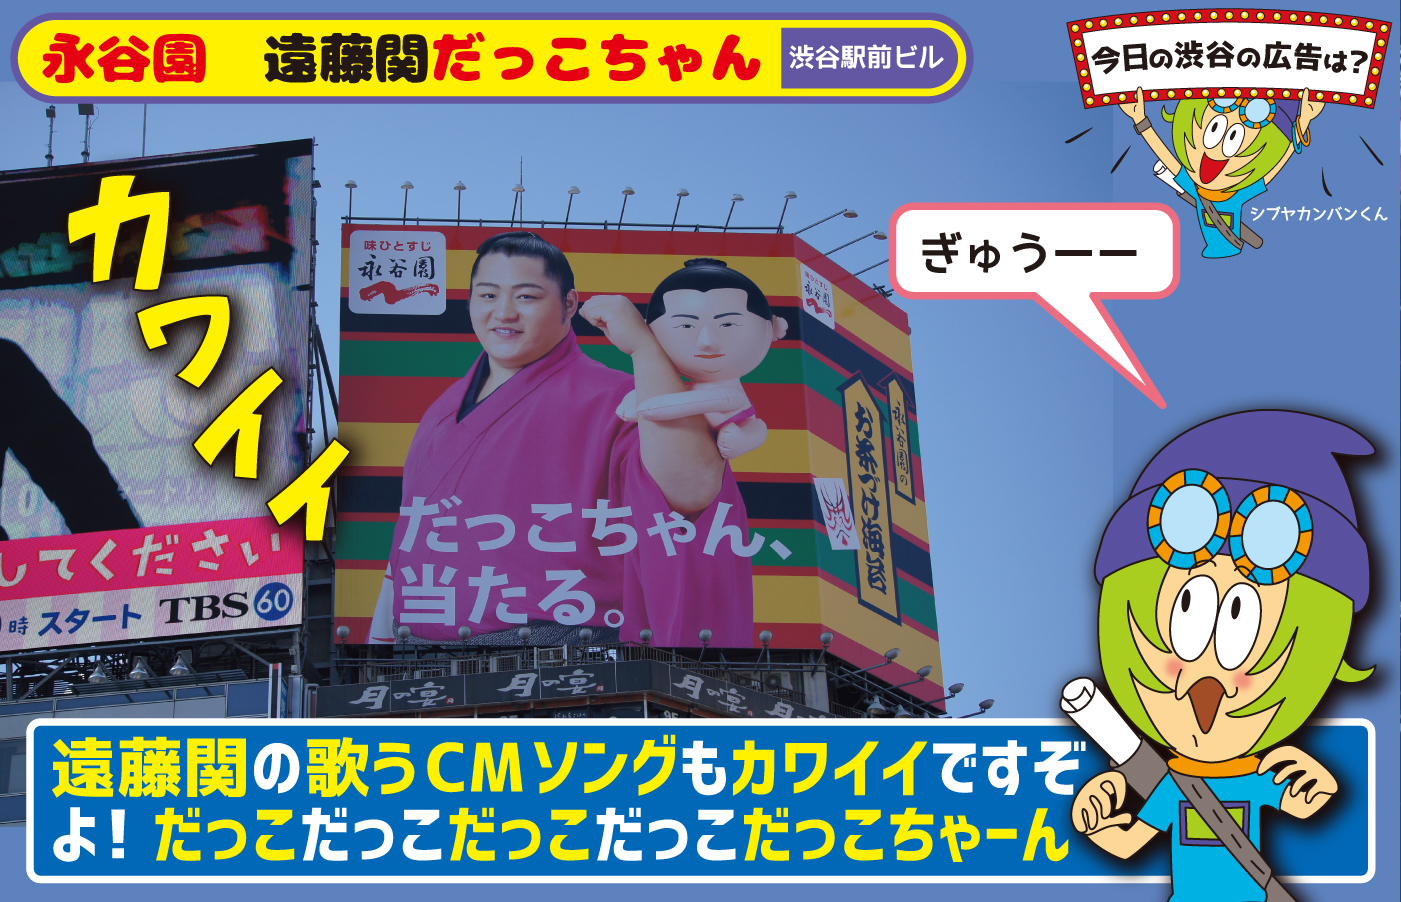 永谷園 遠藤関だっこちゃん 遠藤関の歌うcmソングもかわいいですぞよ だっこだっこだっこだっこだっこちゃーん 今日の渋谷の広告は 看板 ポスター デジタル 車